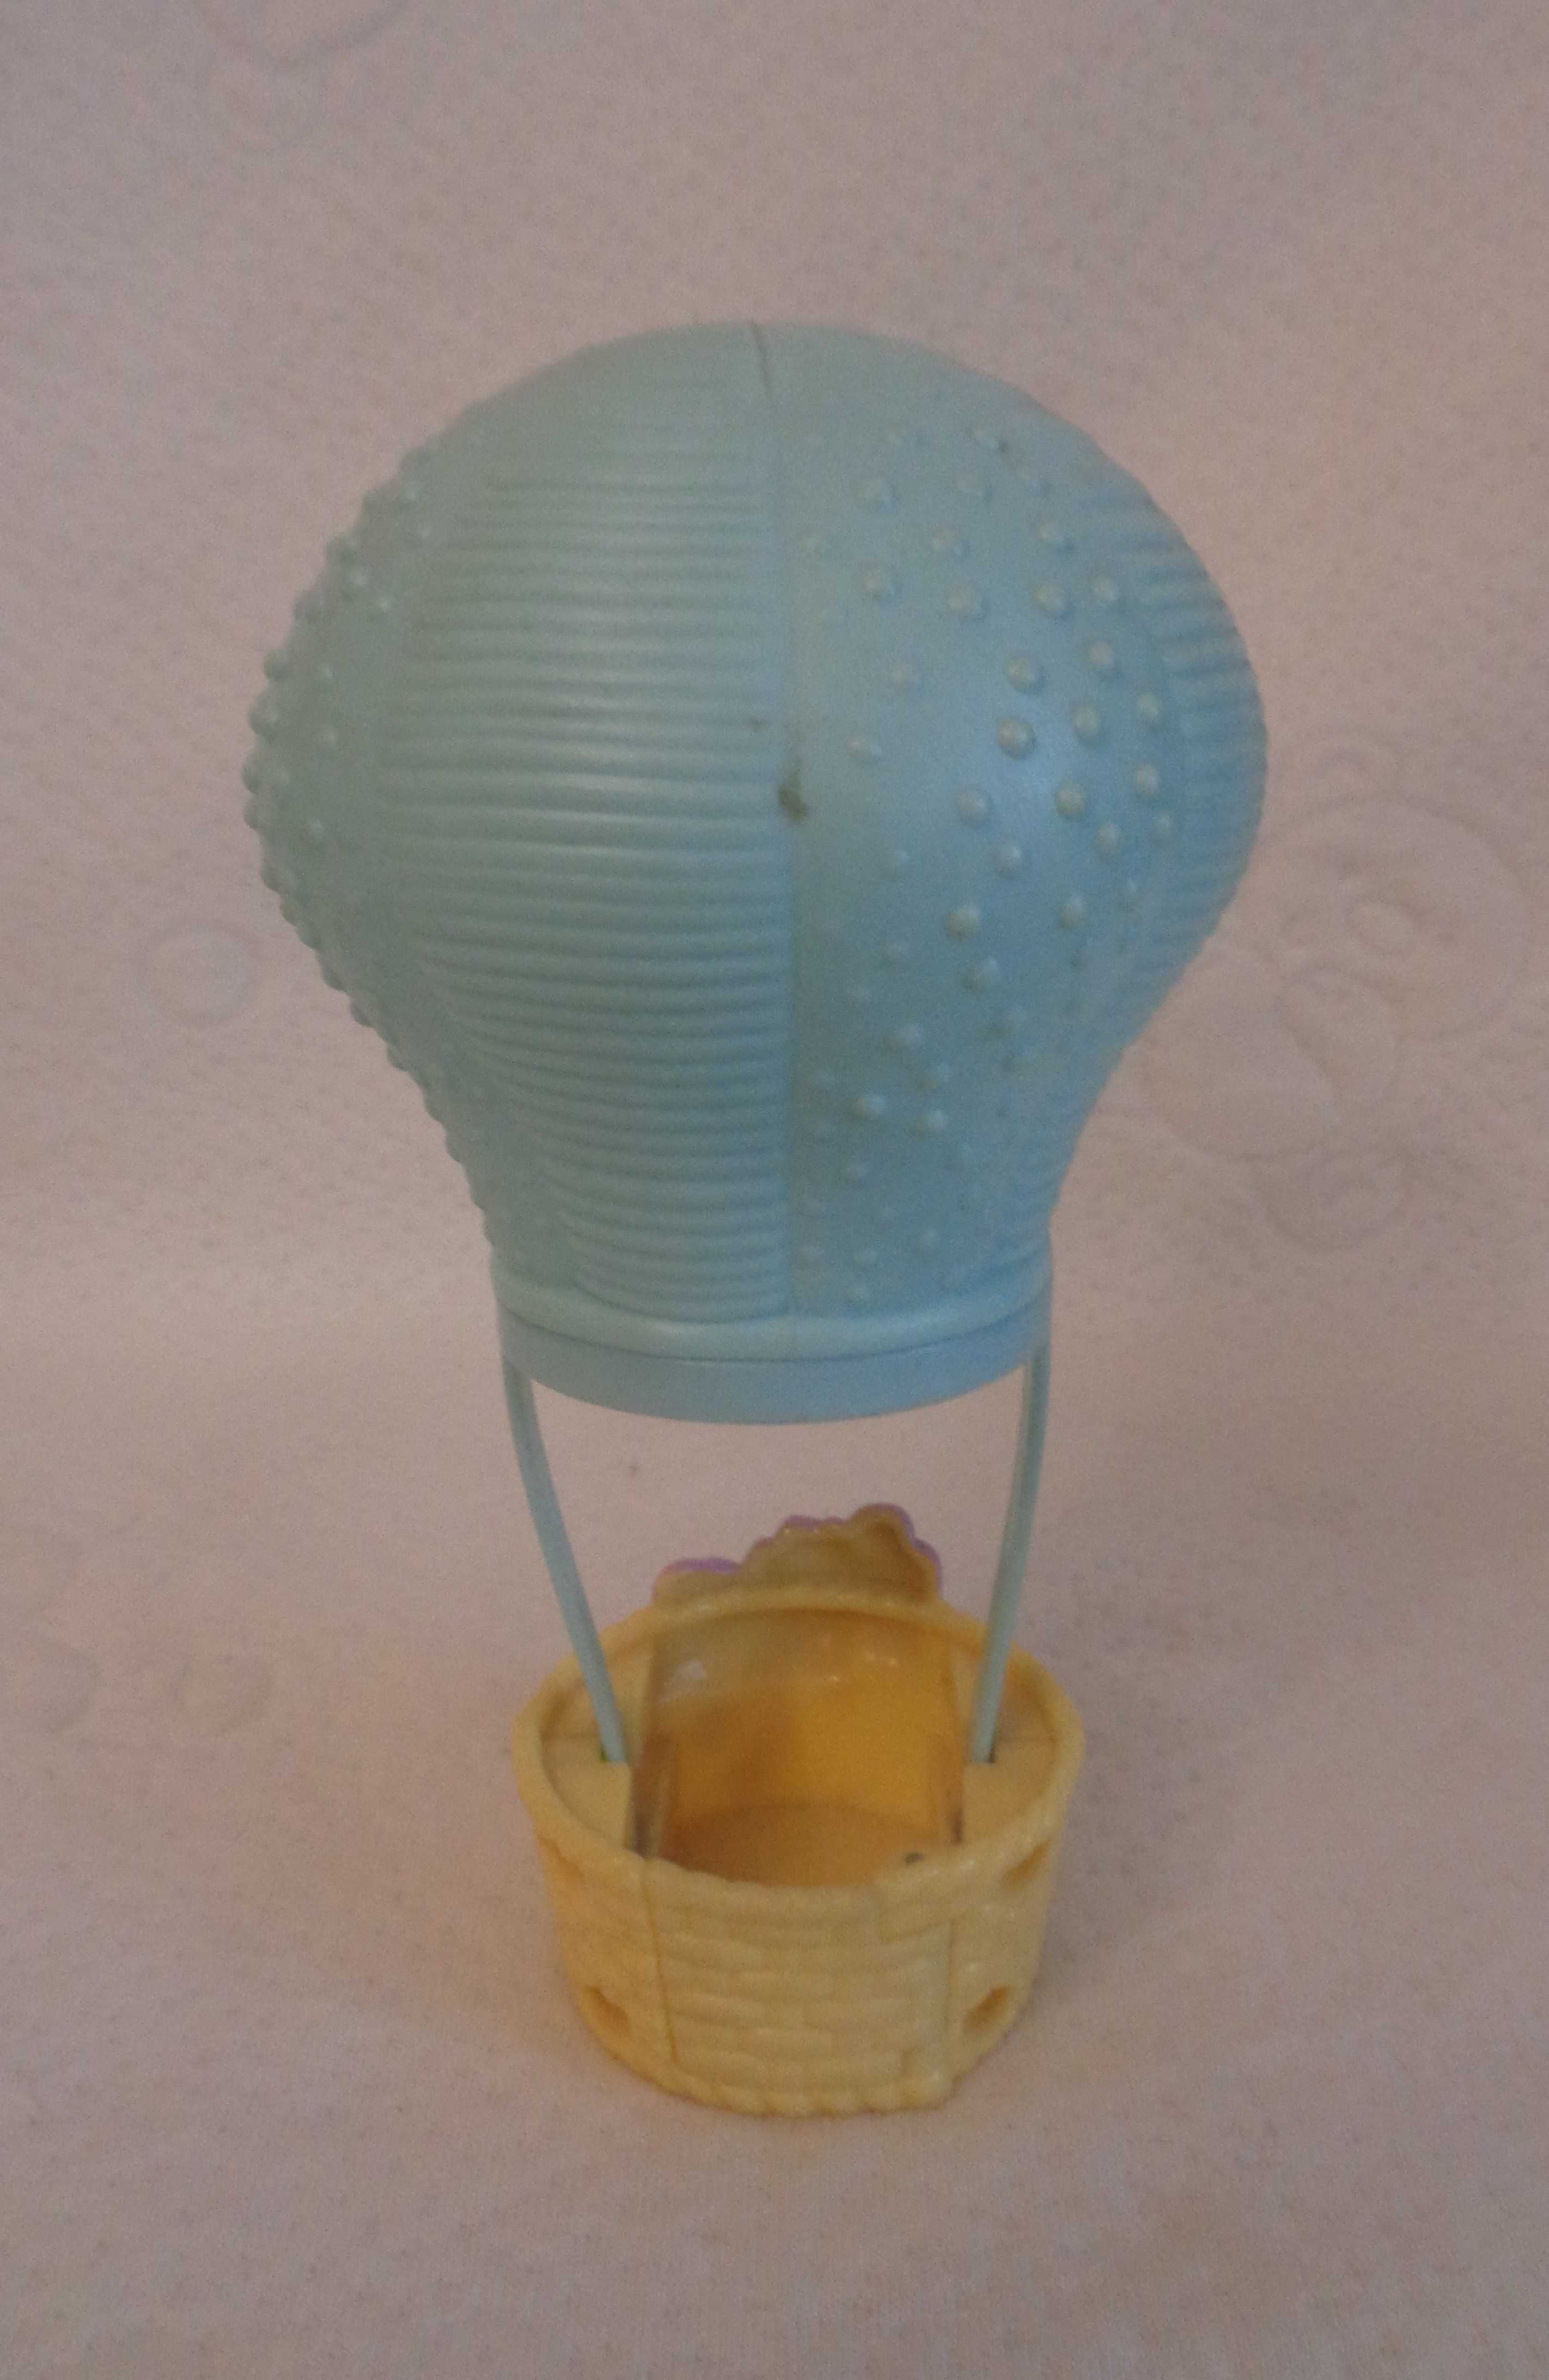 Zabawka - balon latający dla malutkich figurek, np. Pet Shopów